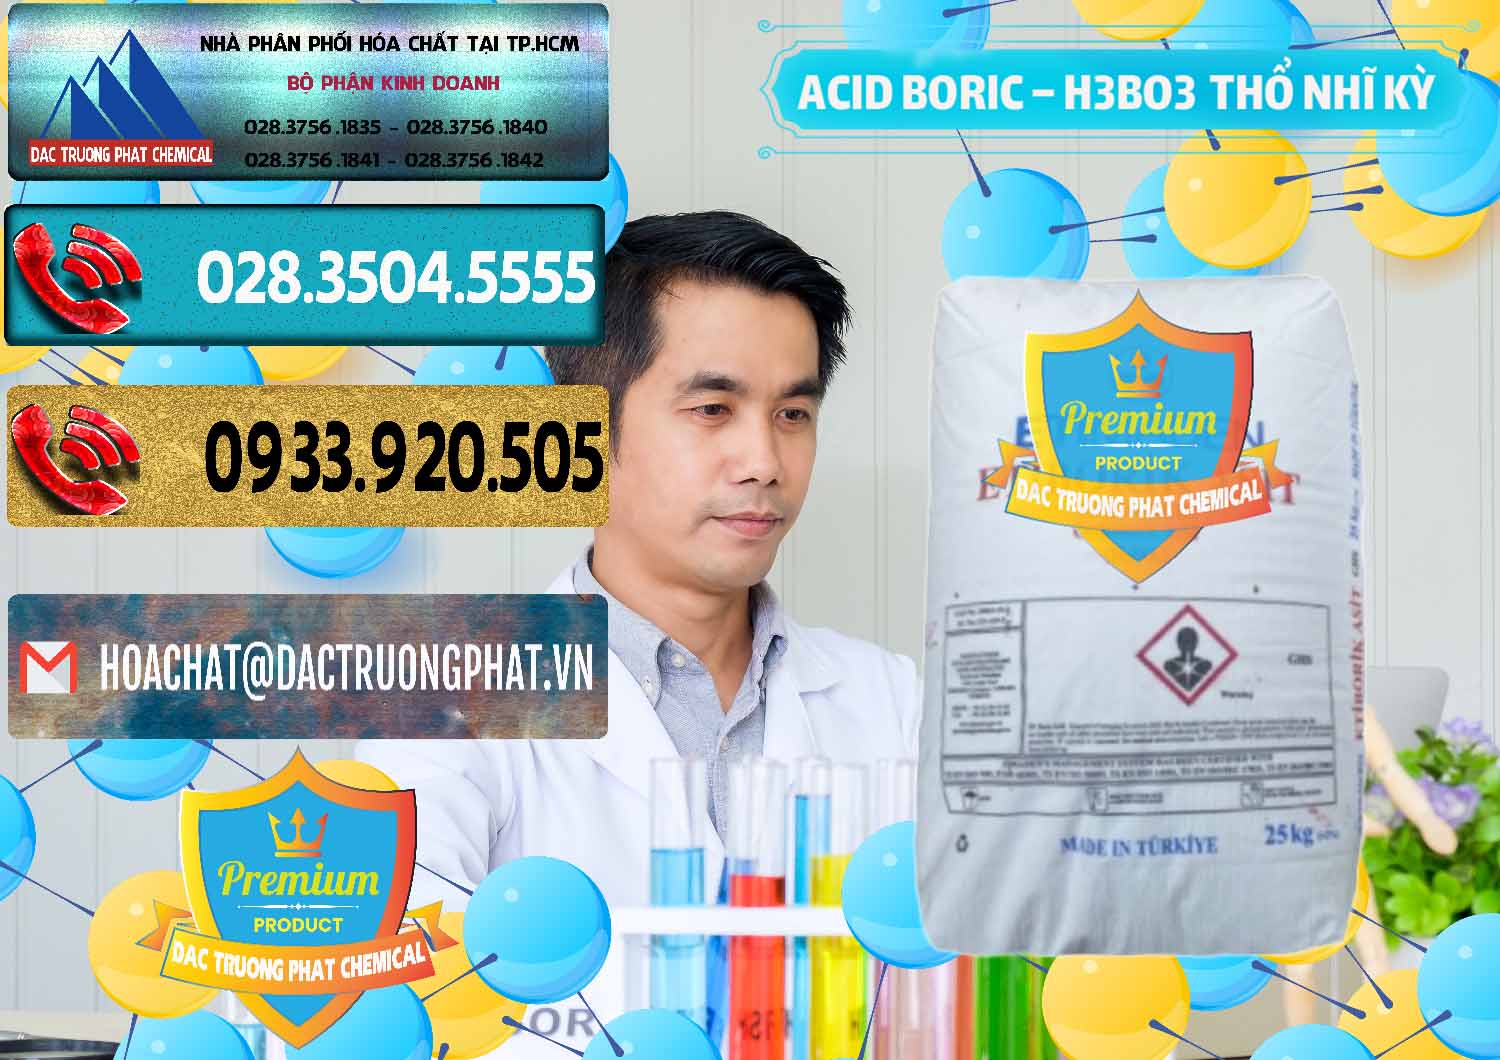 Cty chuyên bán ( cung ứng ) Acid Boric – Axit Boric H3BO3 Etimaden Thổ Nhĩ Kỳ Turkey - 0369 - Cty chuyên cung cấp và kinh doanh hóa chất tại TP.HCM - hoachatdetnhuom.com